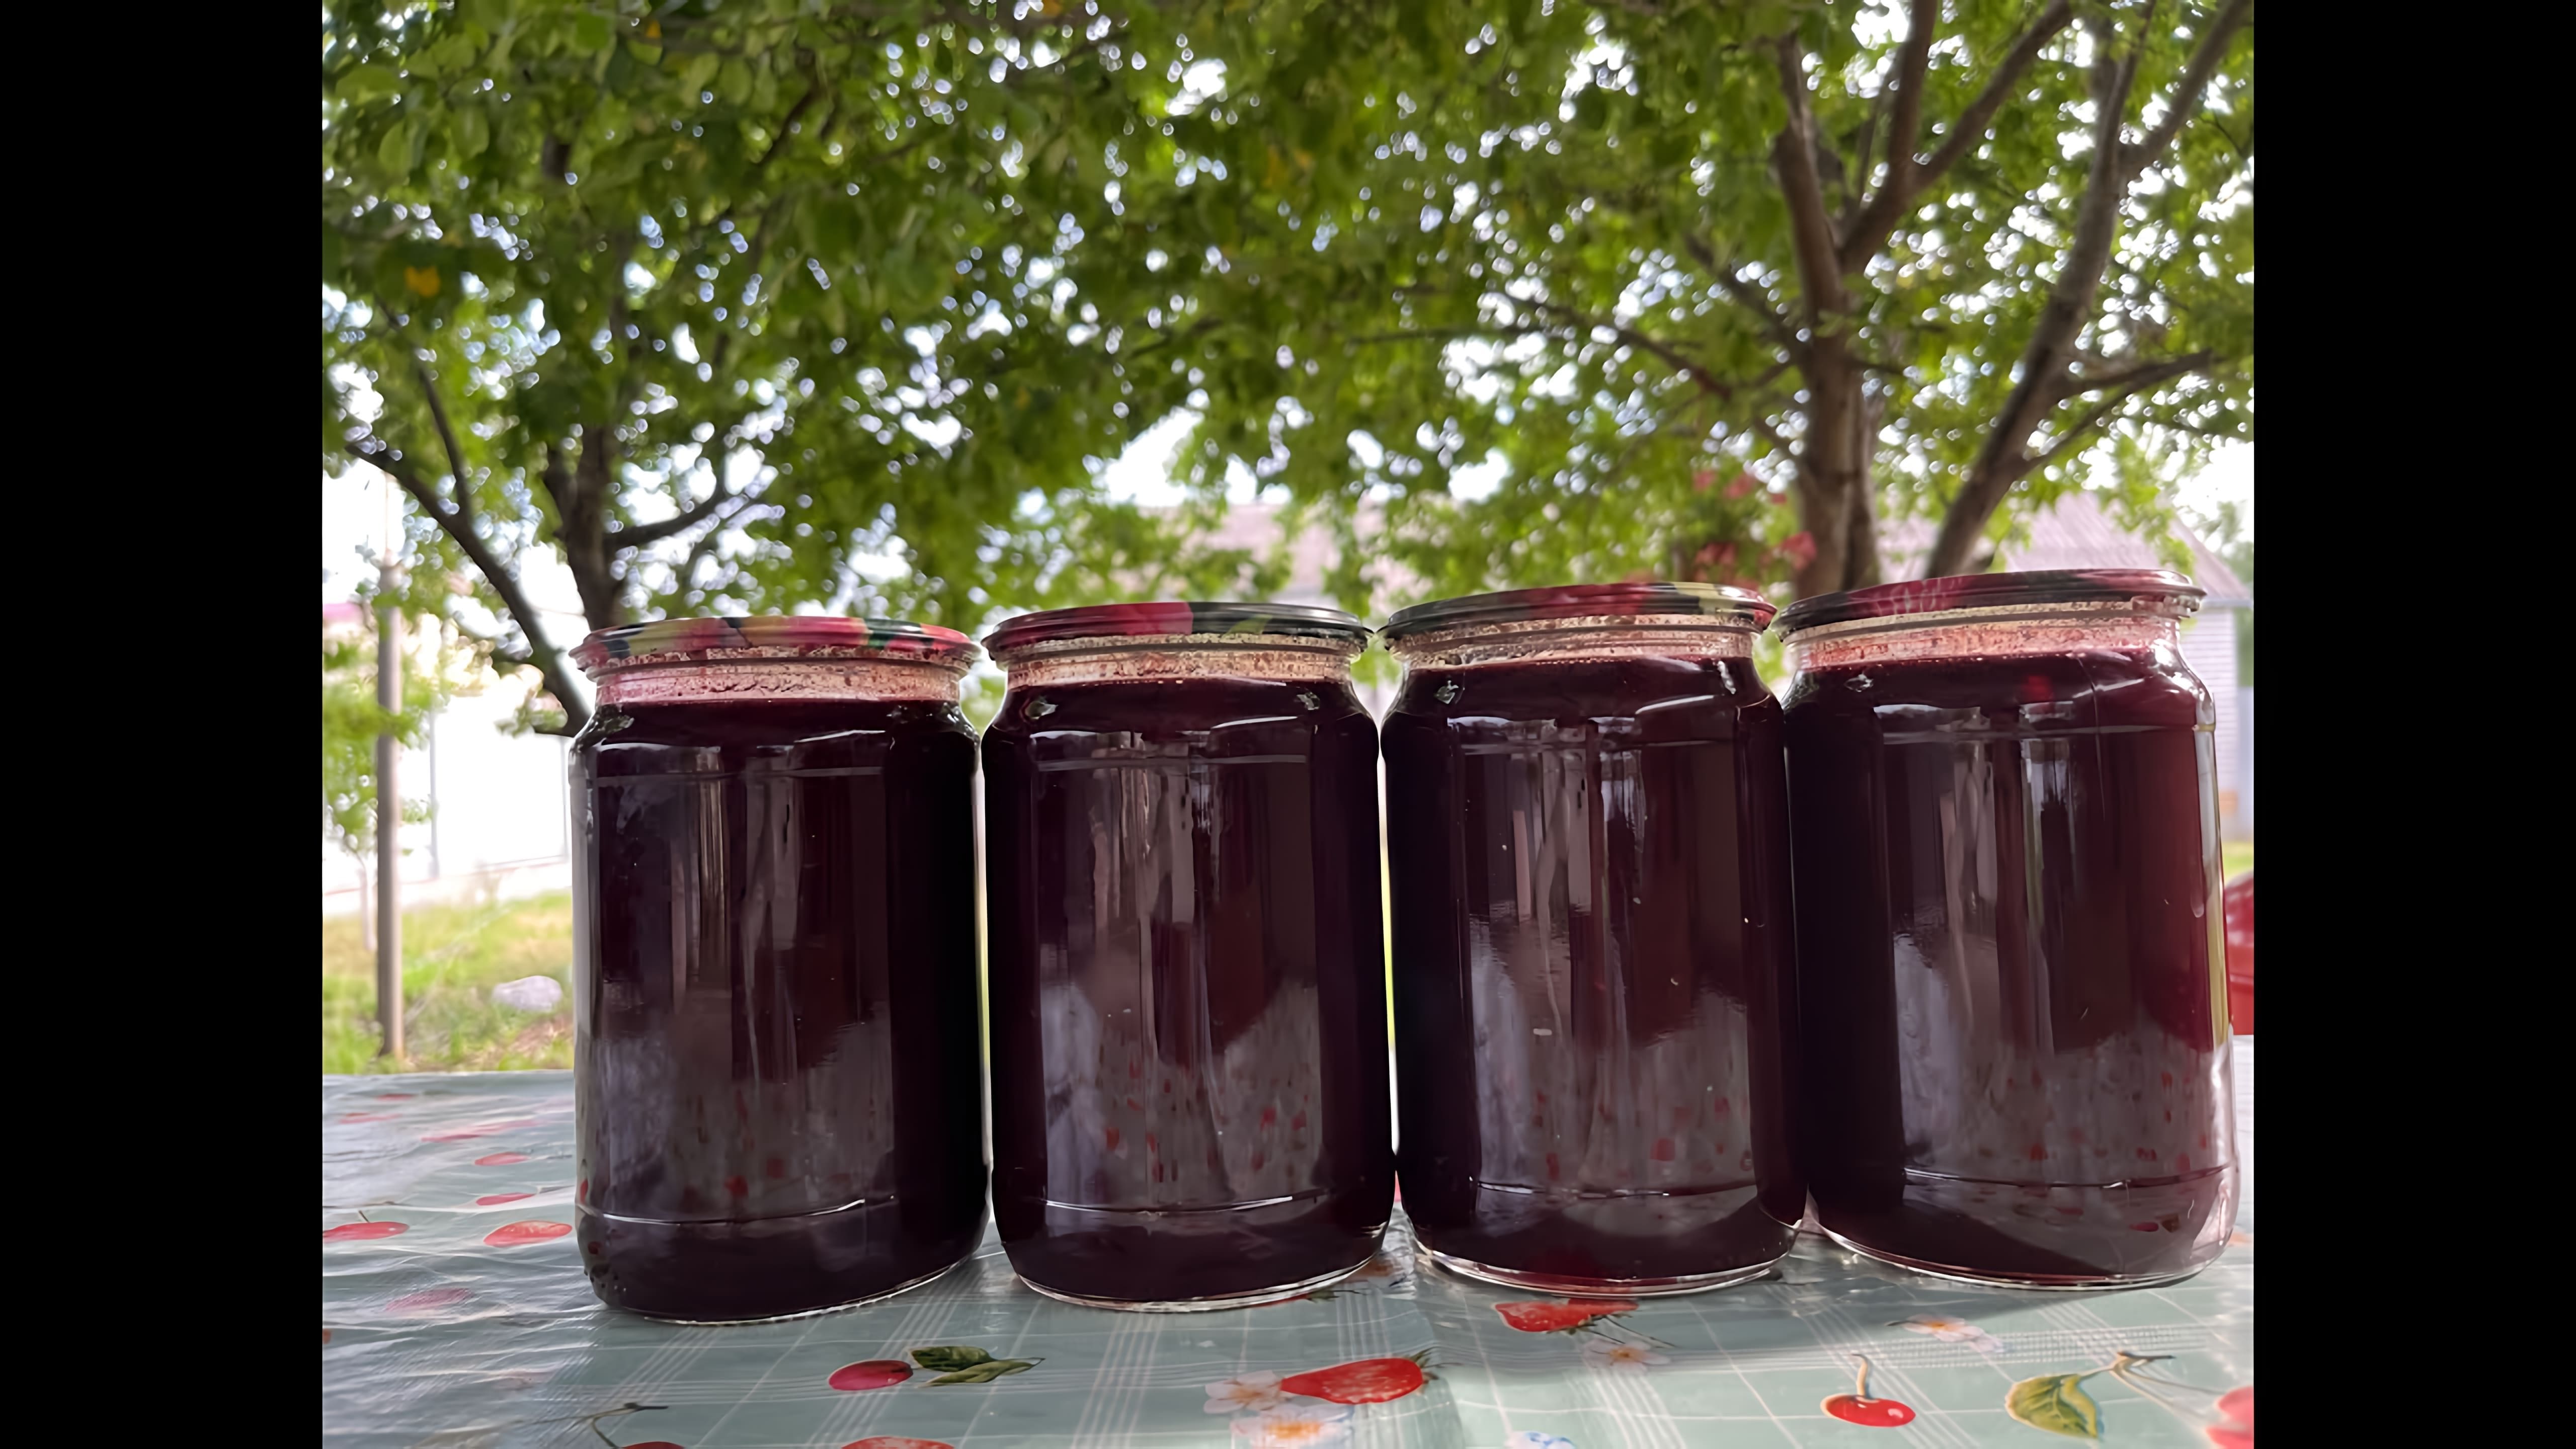 В этом видео демонстрируется процесс приготовления вишневого джема без использования загустителей, только натуральные ингредиенты